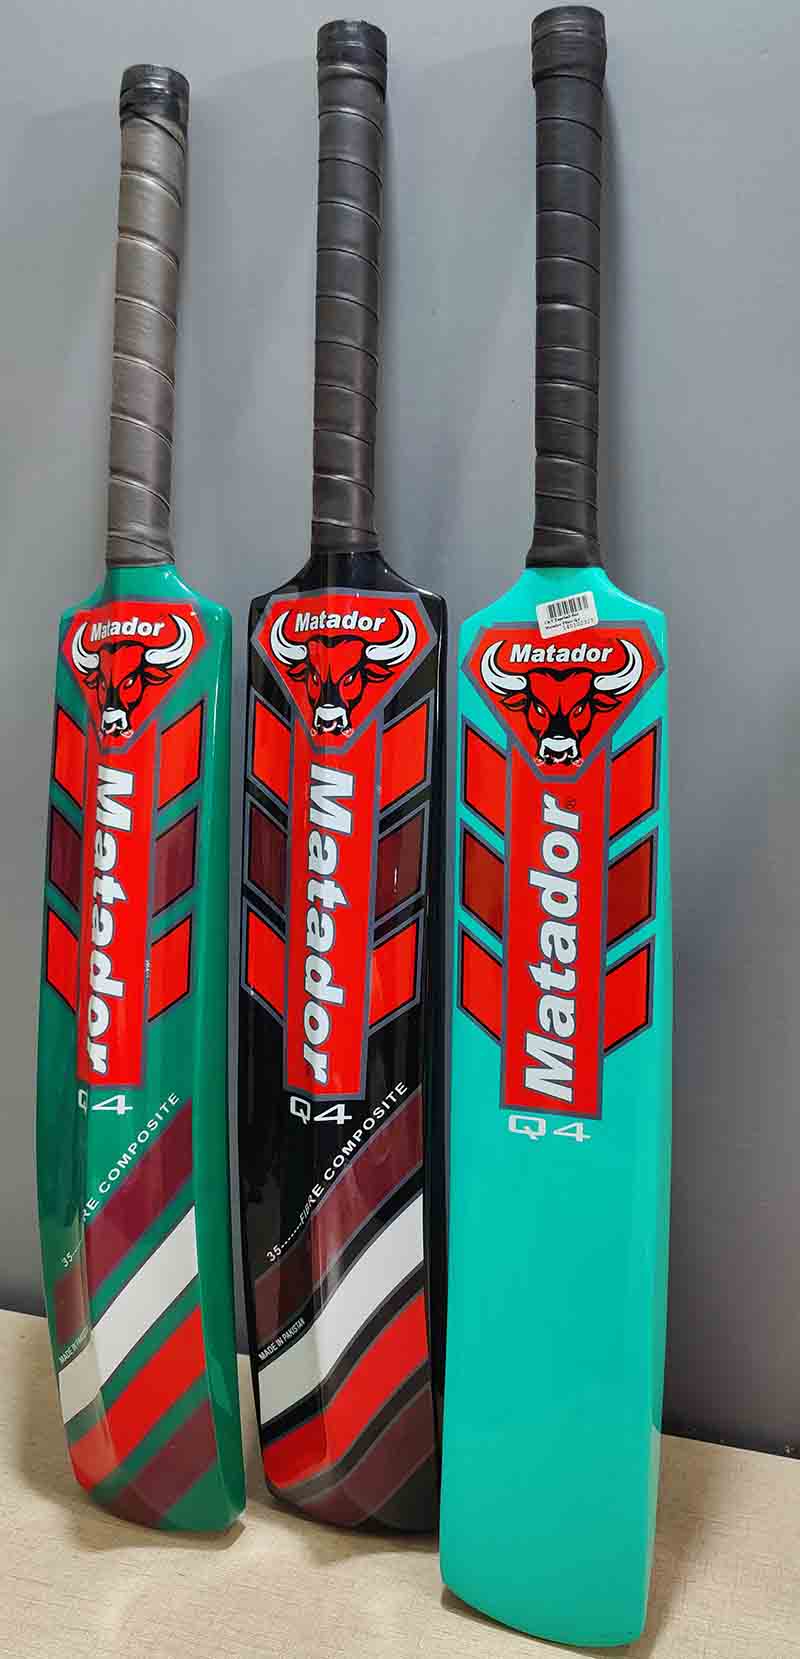 Matador Original Fiber Cricket Bat-Q4